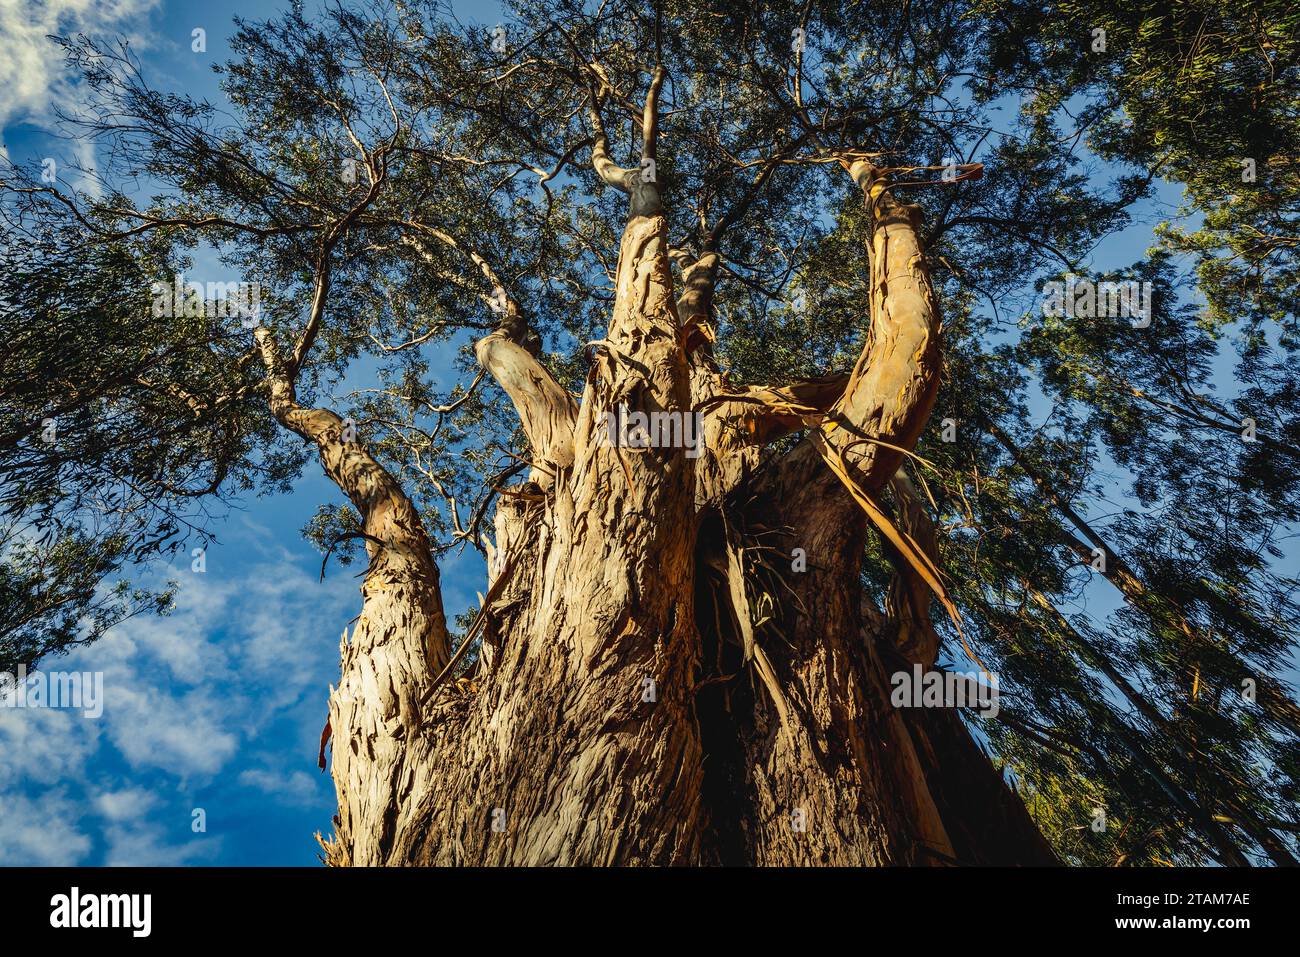 Maestosi alberi di eucalipto che si stagliano su di un cielo vibrante, creando una scena naturale tranquilla e senza tempo, vista dall'angolo basso Foto Stock